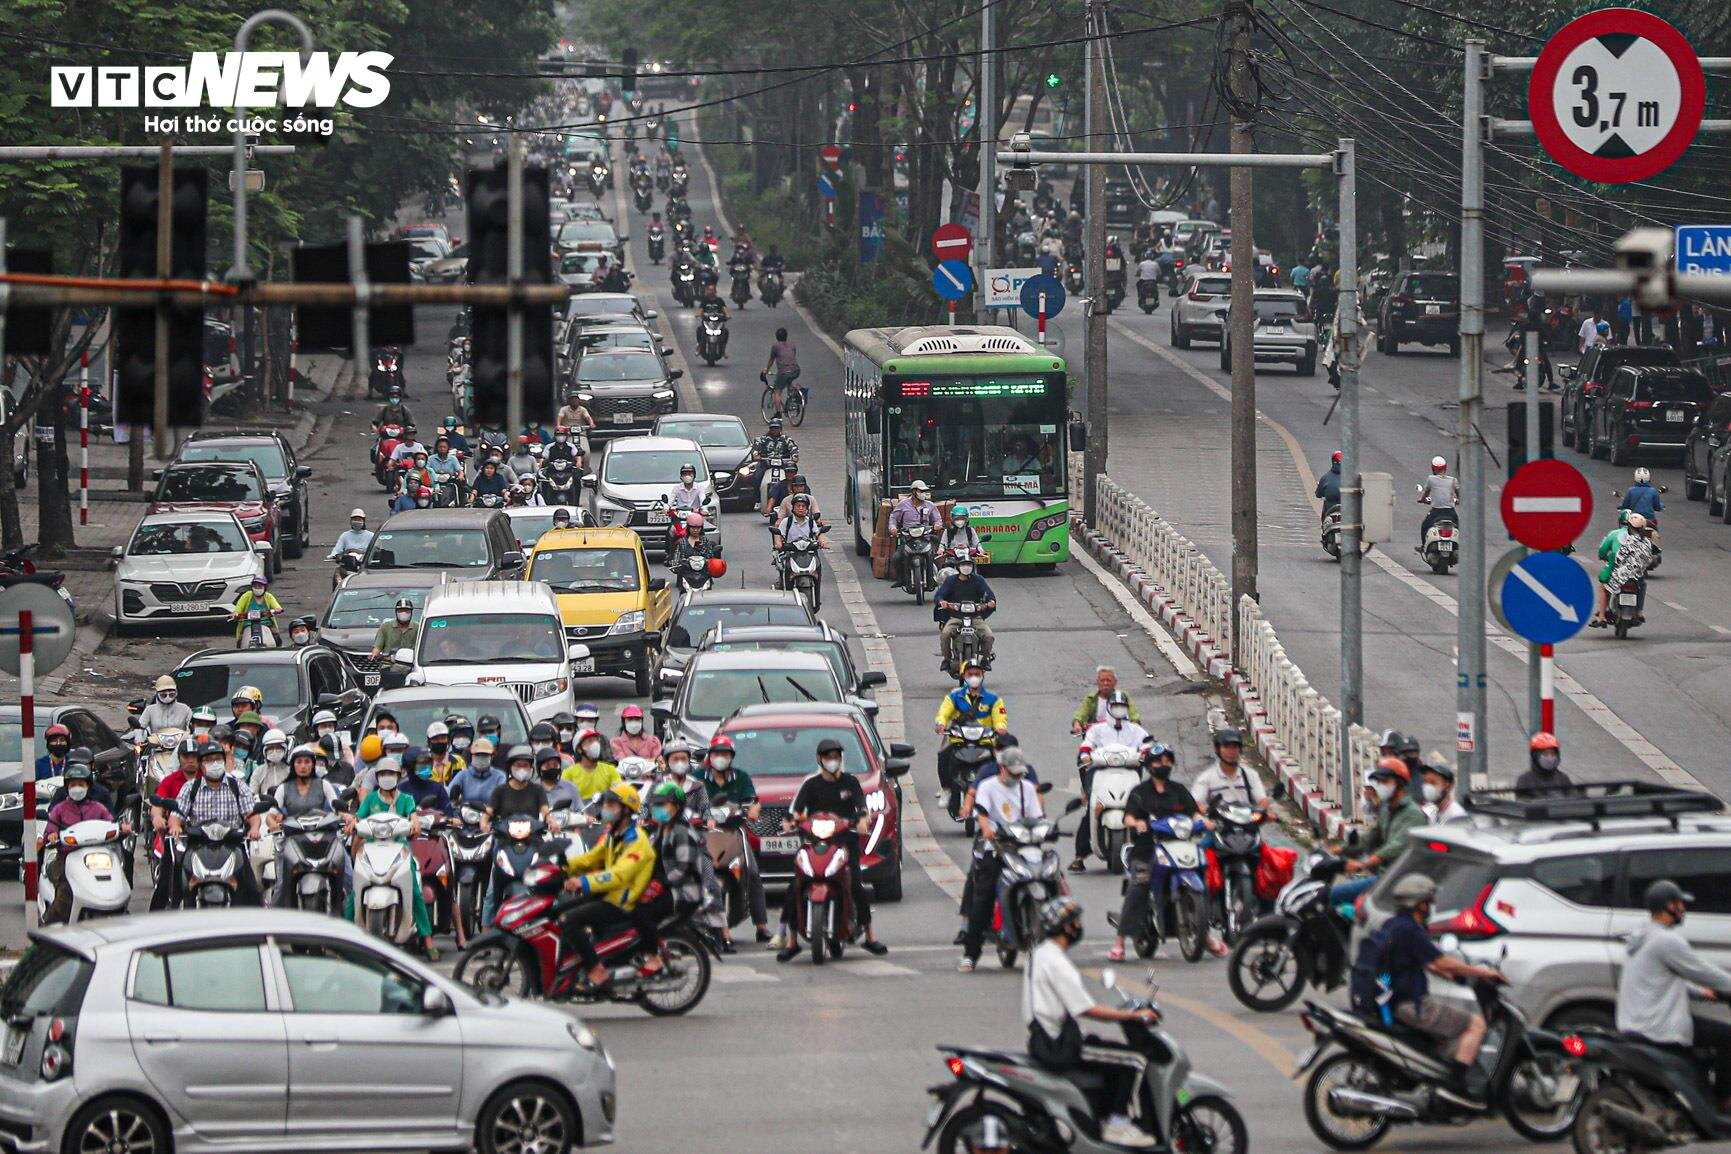 Bị cướp làn đường, buýt nhanh BRT chôn chân trên phố Hà Nội - 6